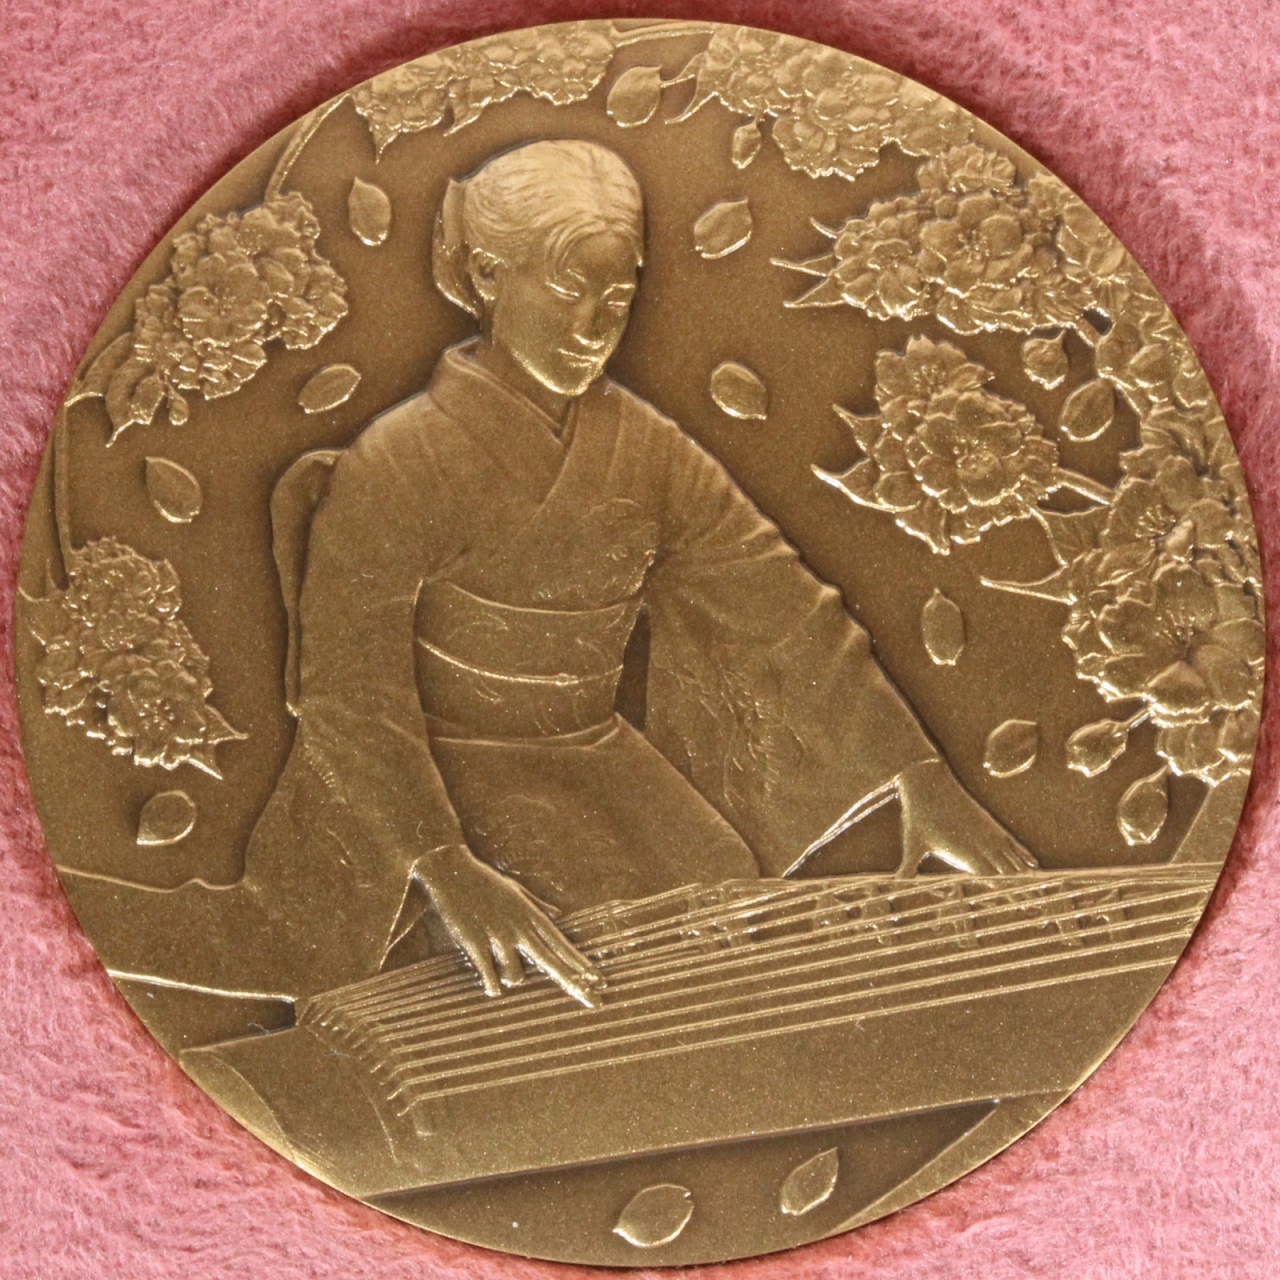 になります平成元年桜の通り抜け記念メダルSILVER 1000刻印純銀 124.6ｇ造幣局